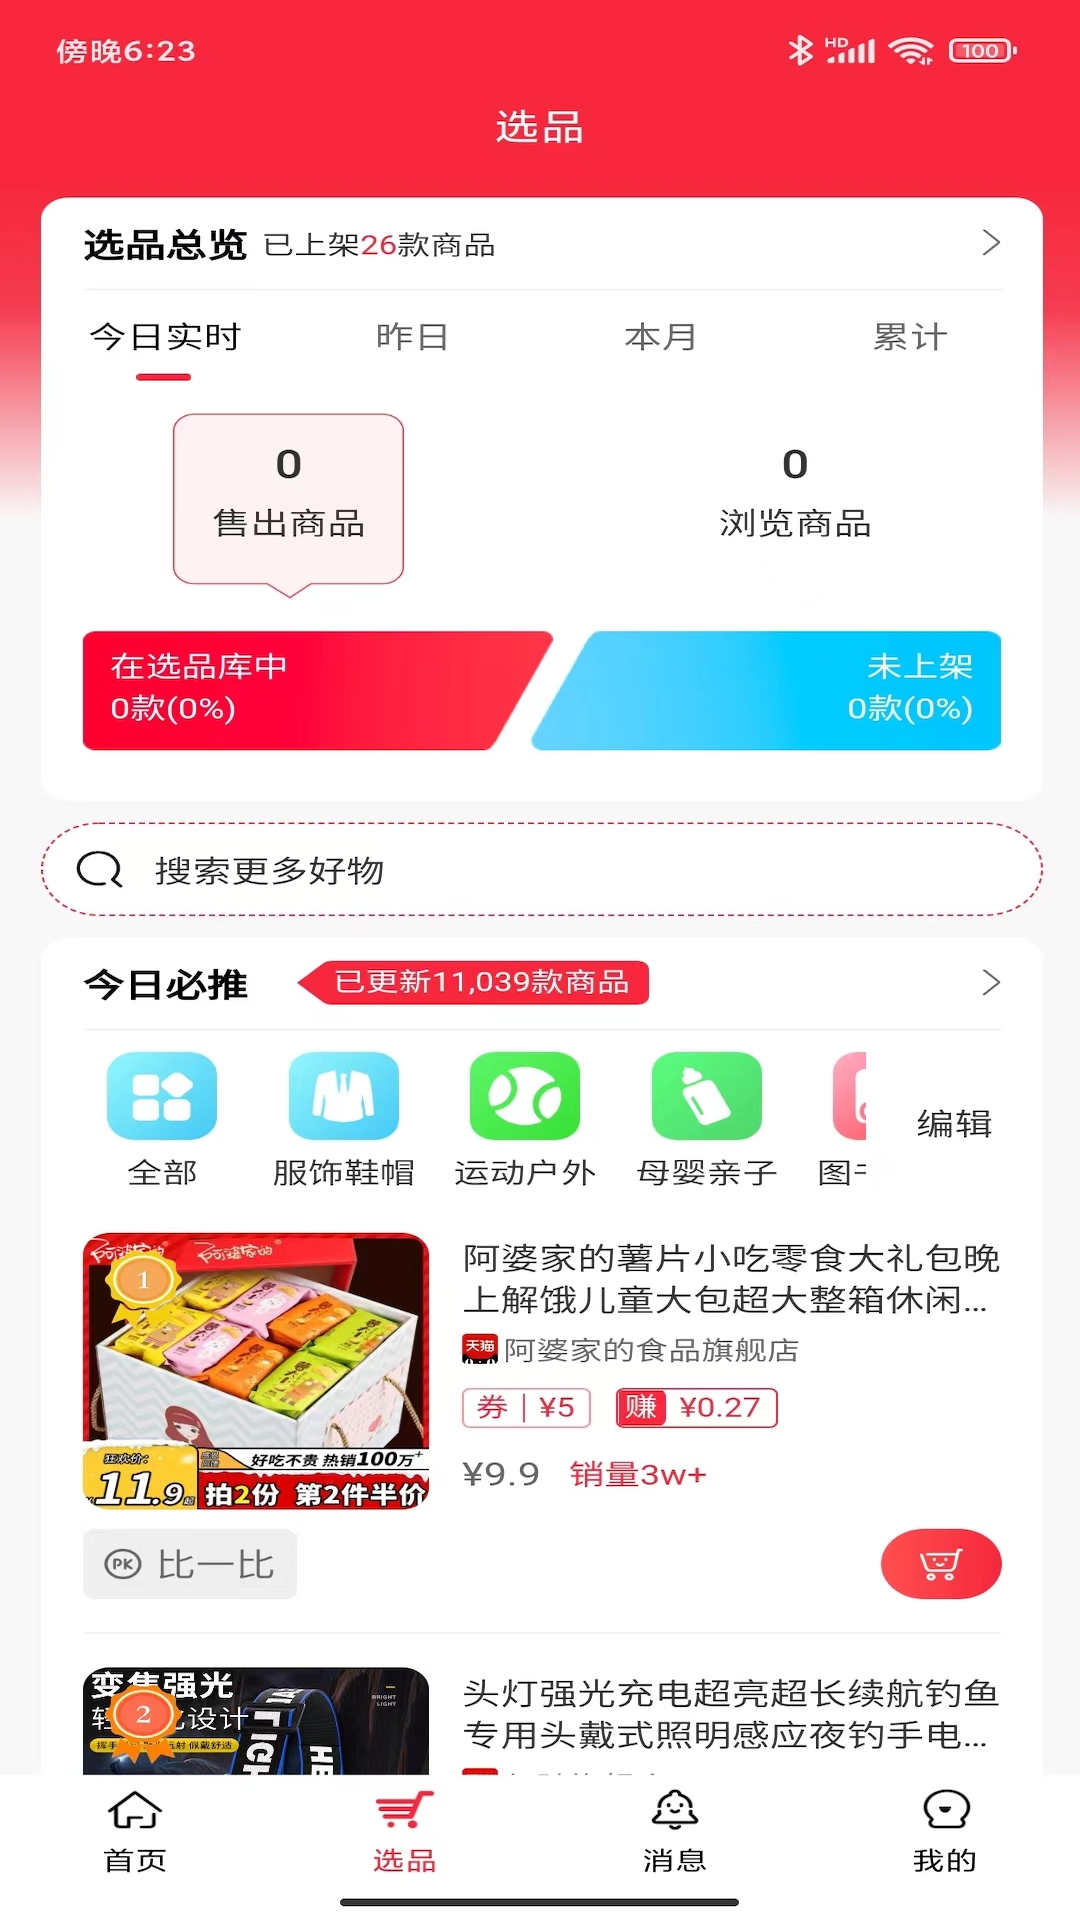 嗨购蛙商家版app官方下载 v1.0.0截图3